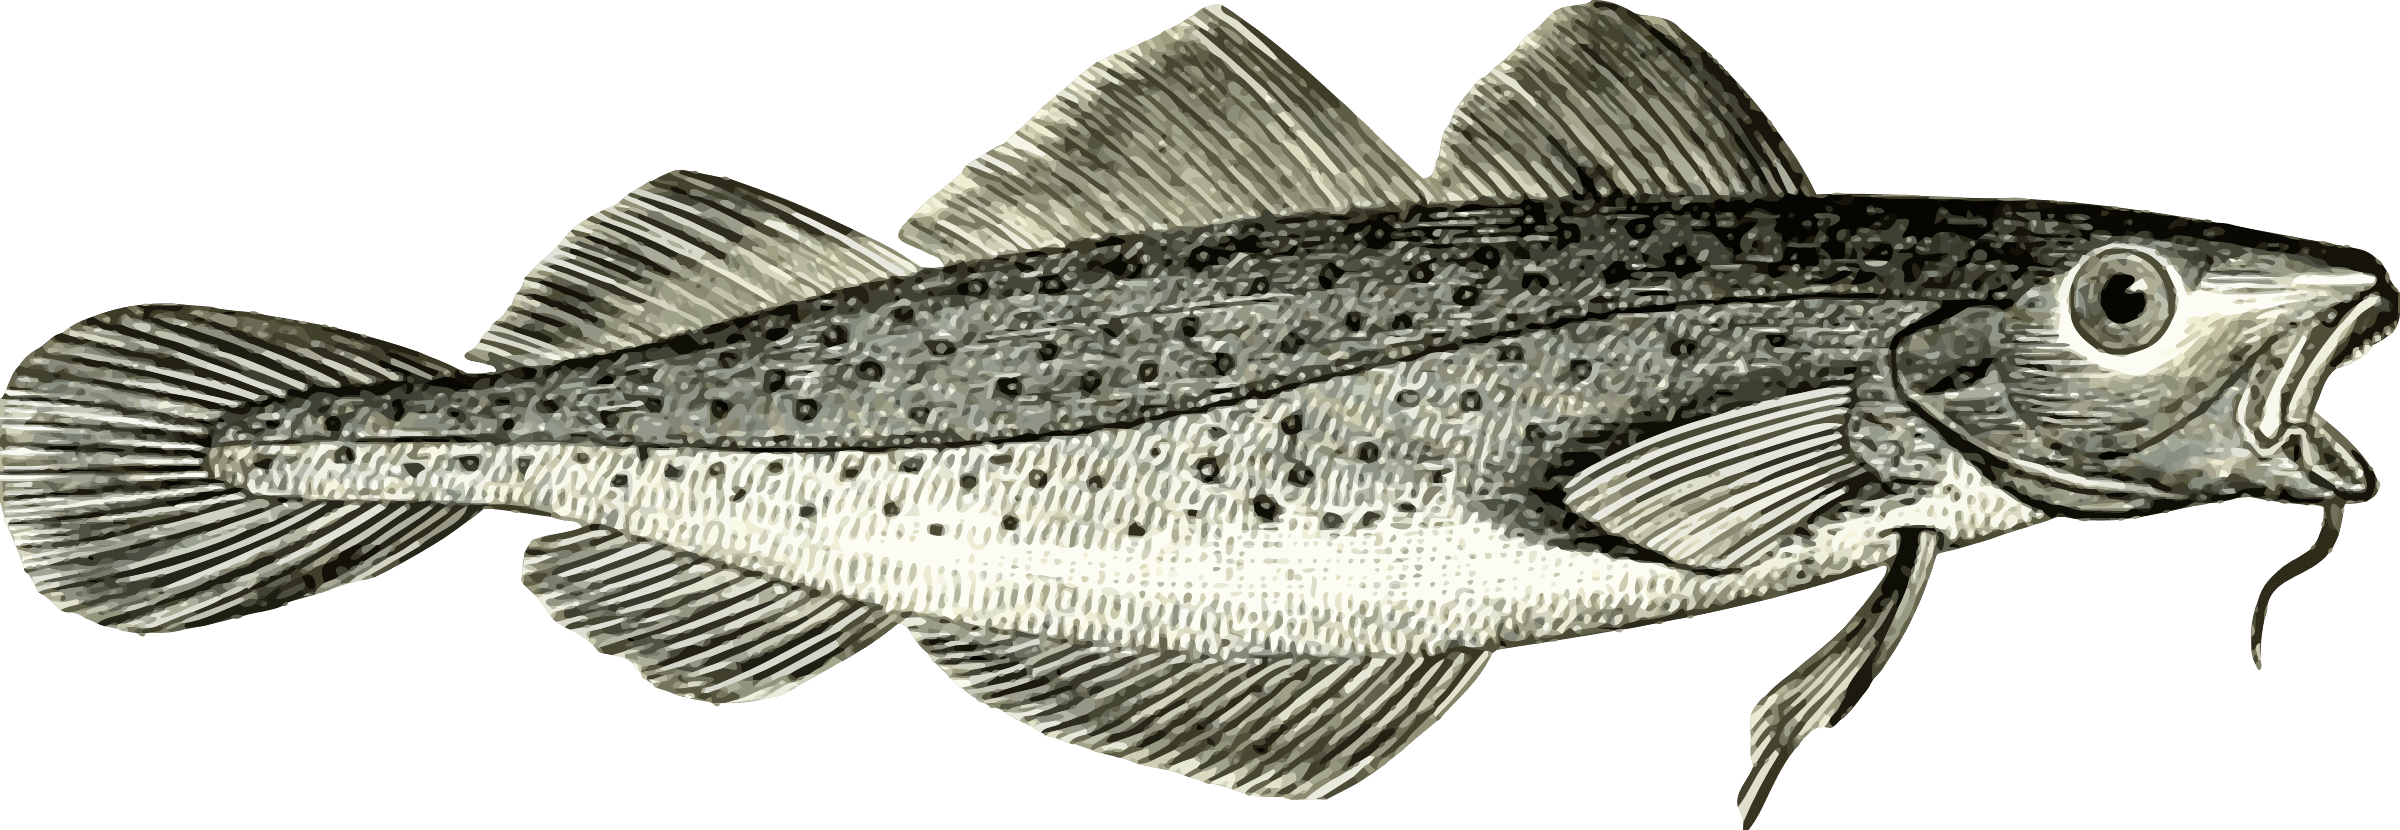 Северная треска 6 букв. Атлантическая треска (gadus morhua). Треска на прозрачном фоне. Рисунок трески. Codfish рыба.